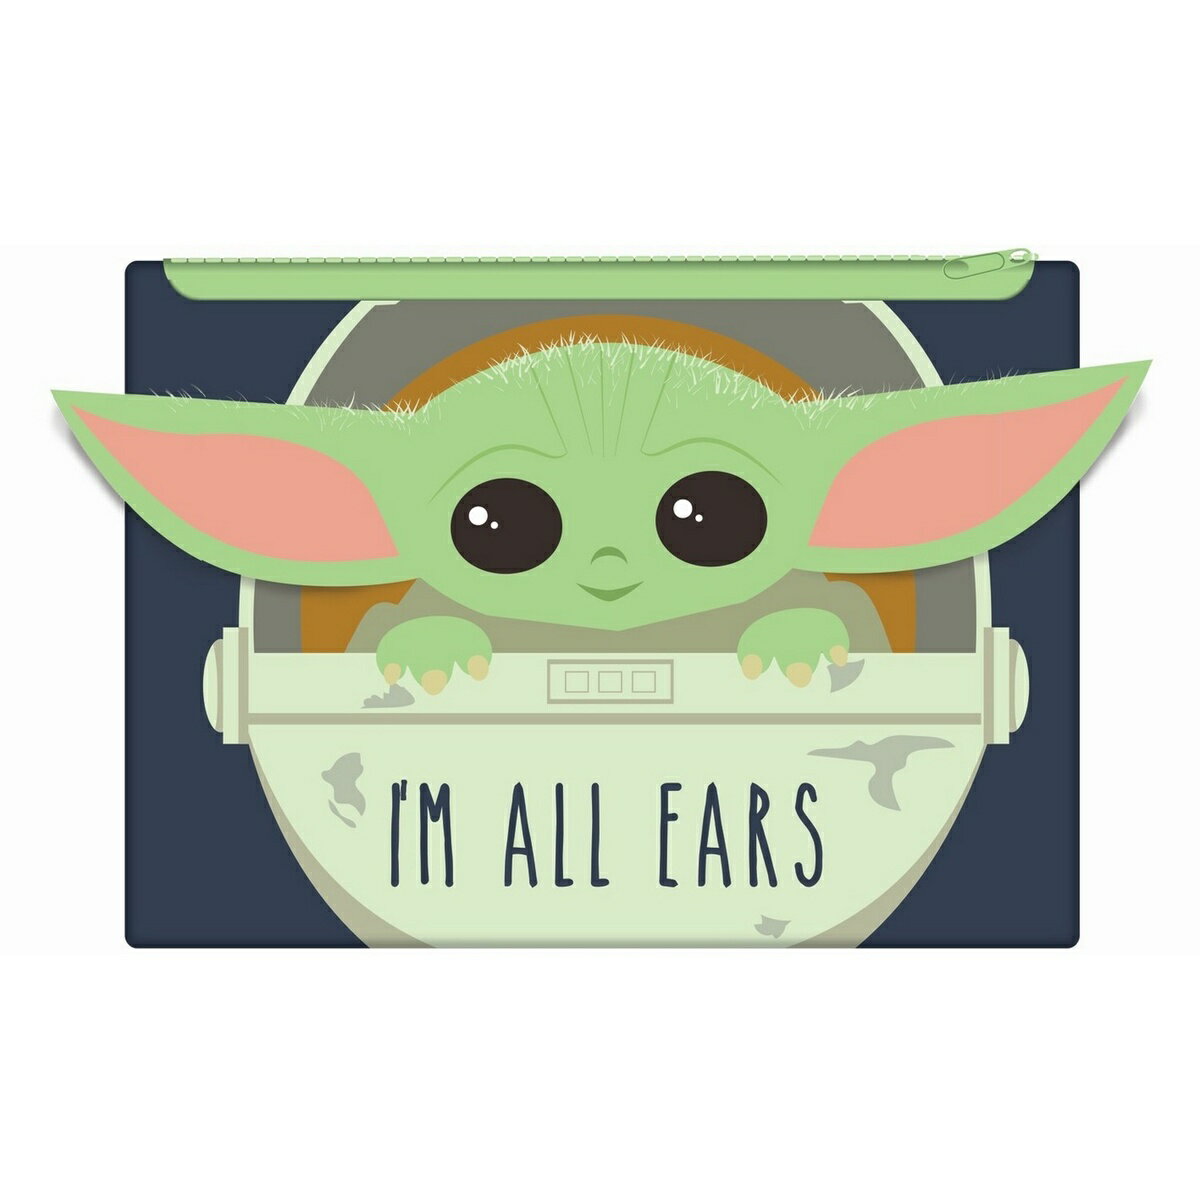 (スター・ウォーズ) Star Wars オフィシャル商品 マンダロリアン Im All Ears ペンシルケース 筆入れ 【海外通販】